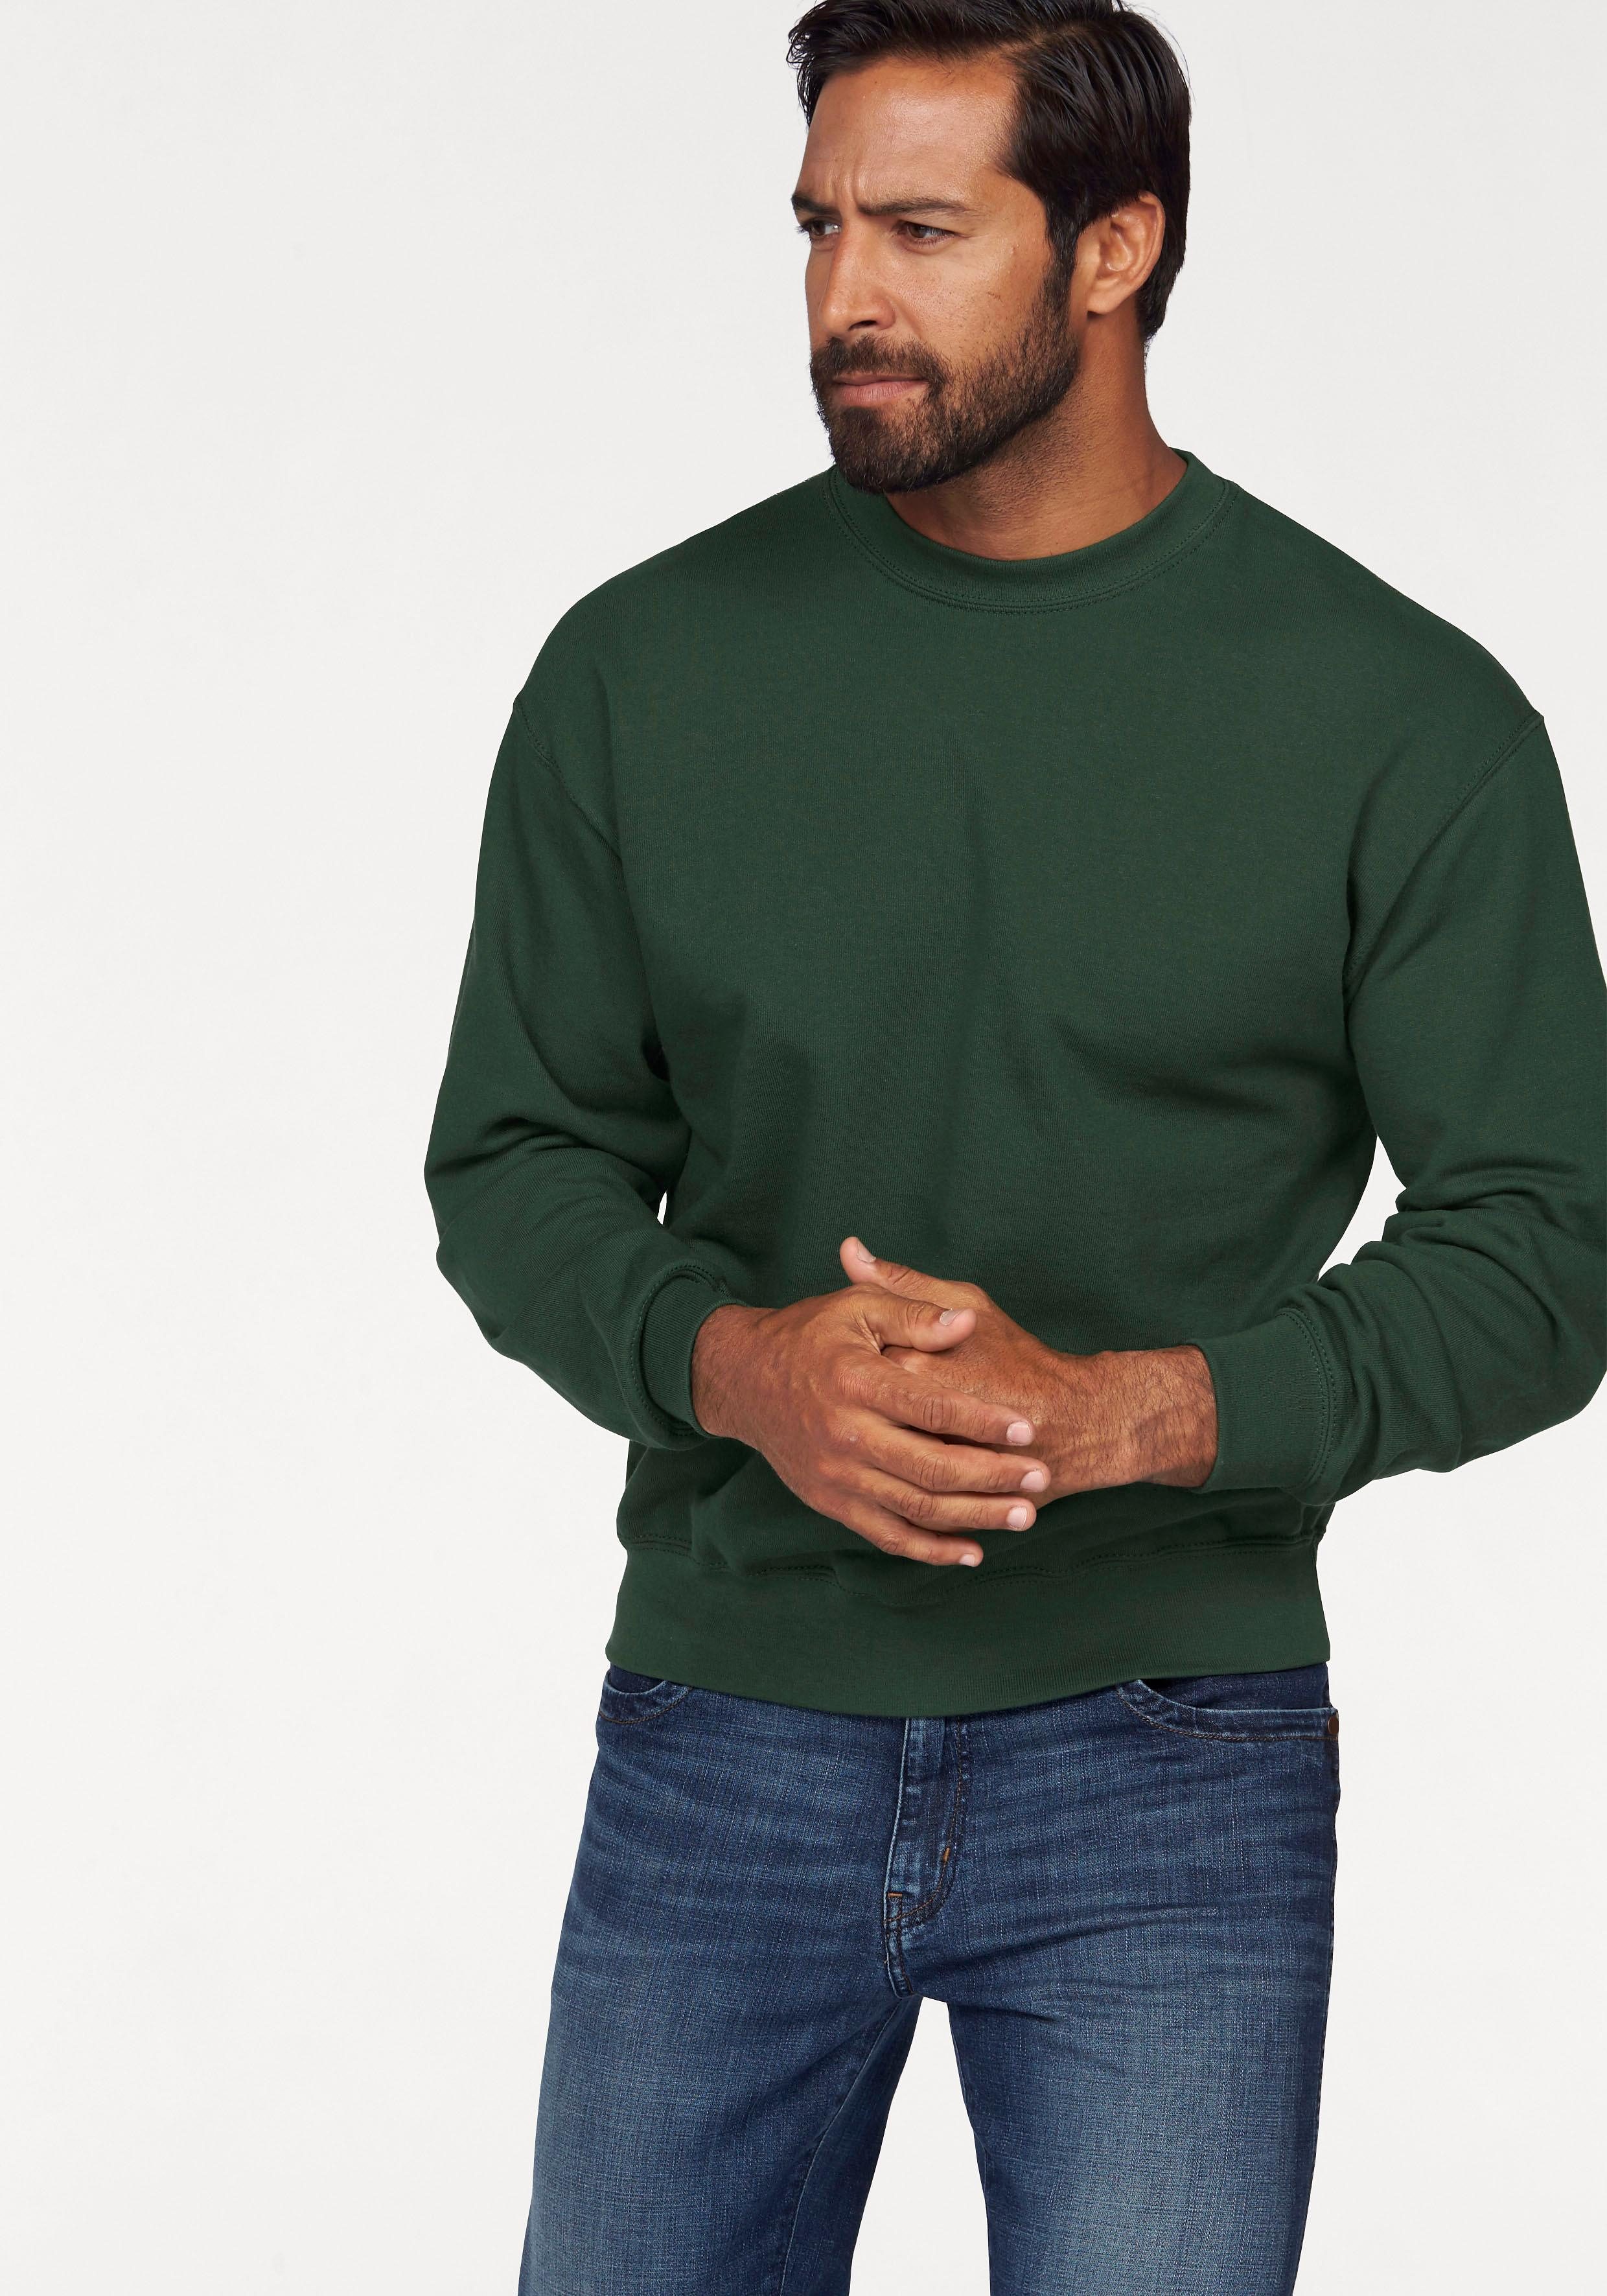 Grüne Herren-Pullover online kaufen | OTTO